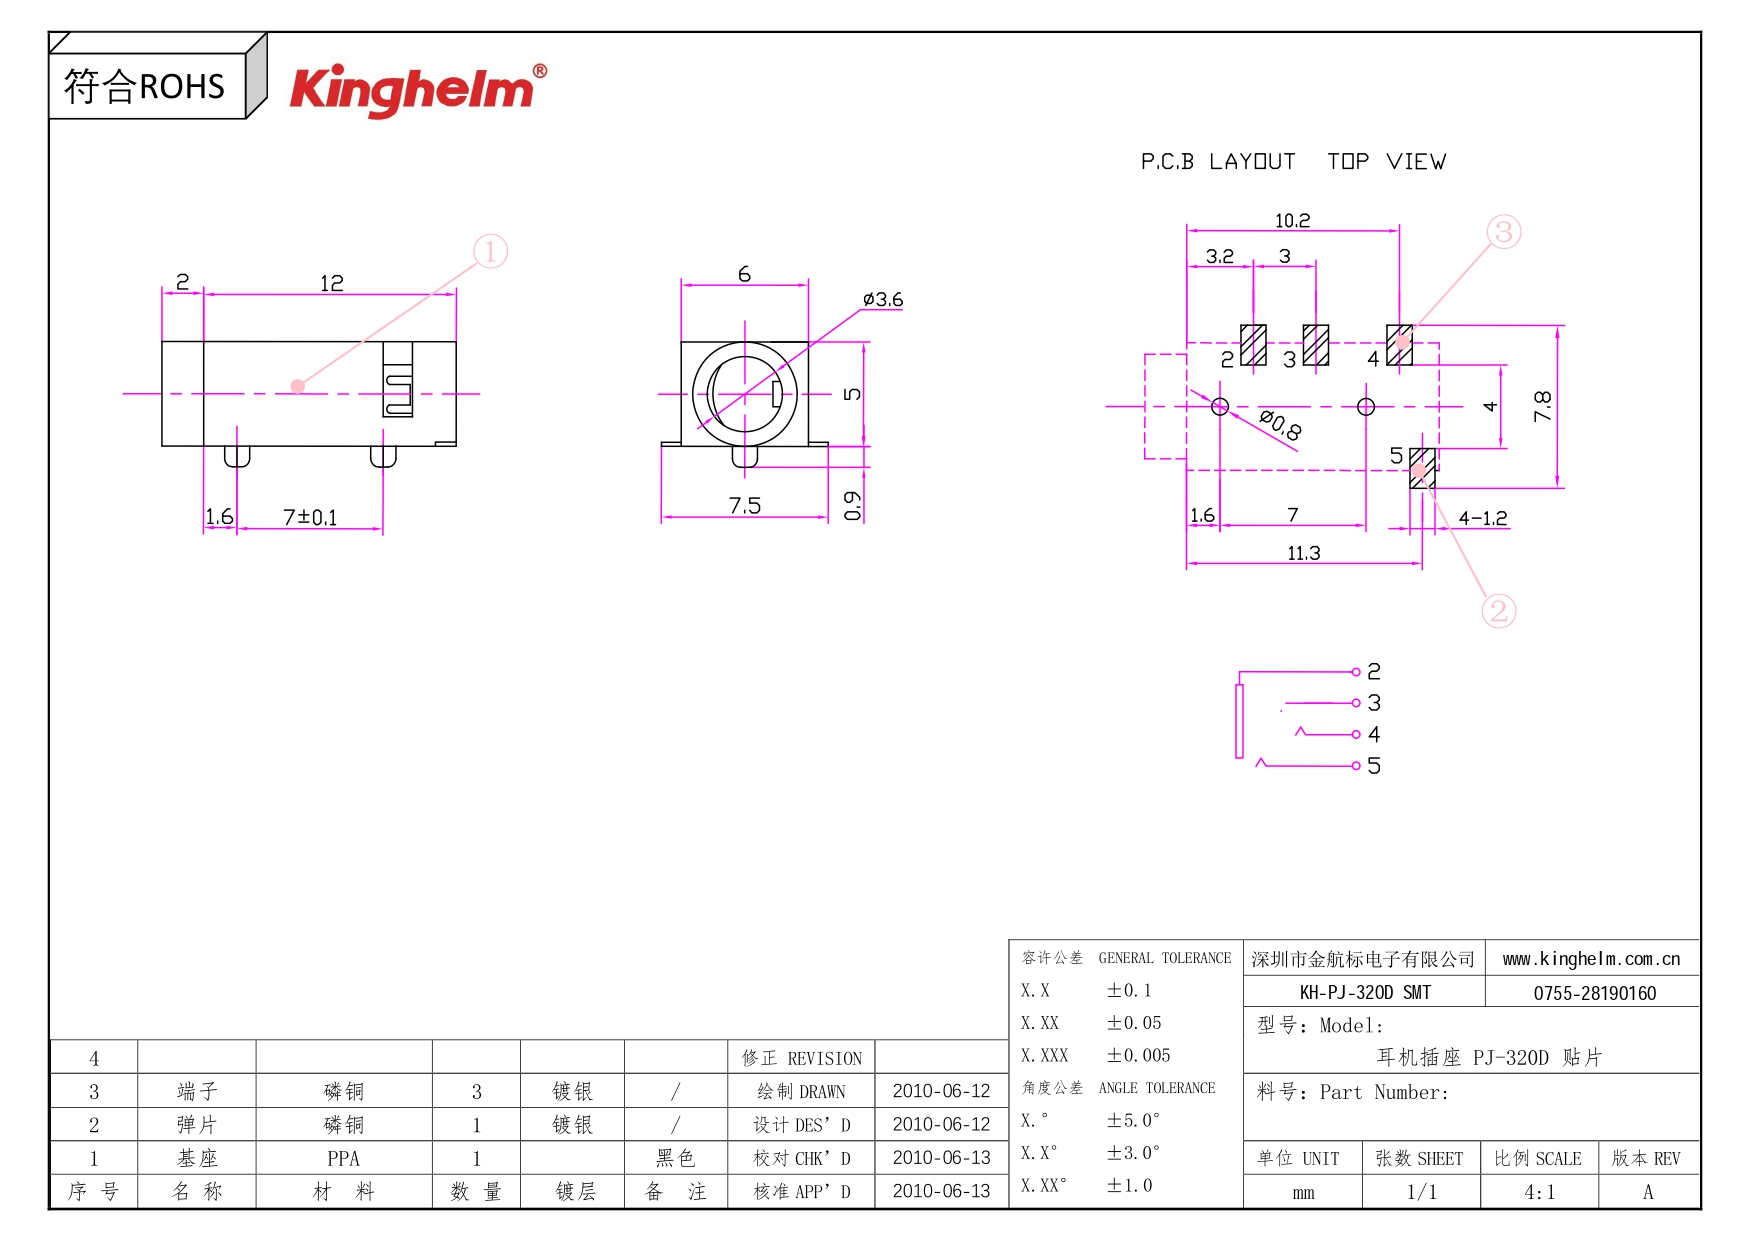 KH-PJ-320D-SMT_page-0001.jpg